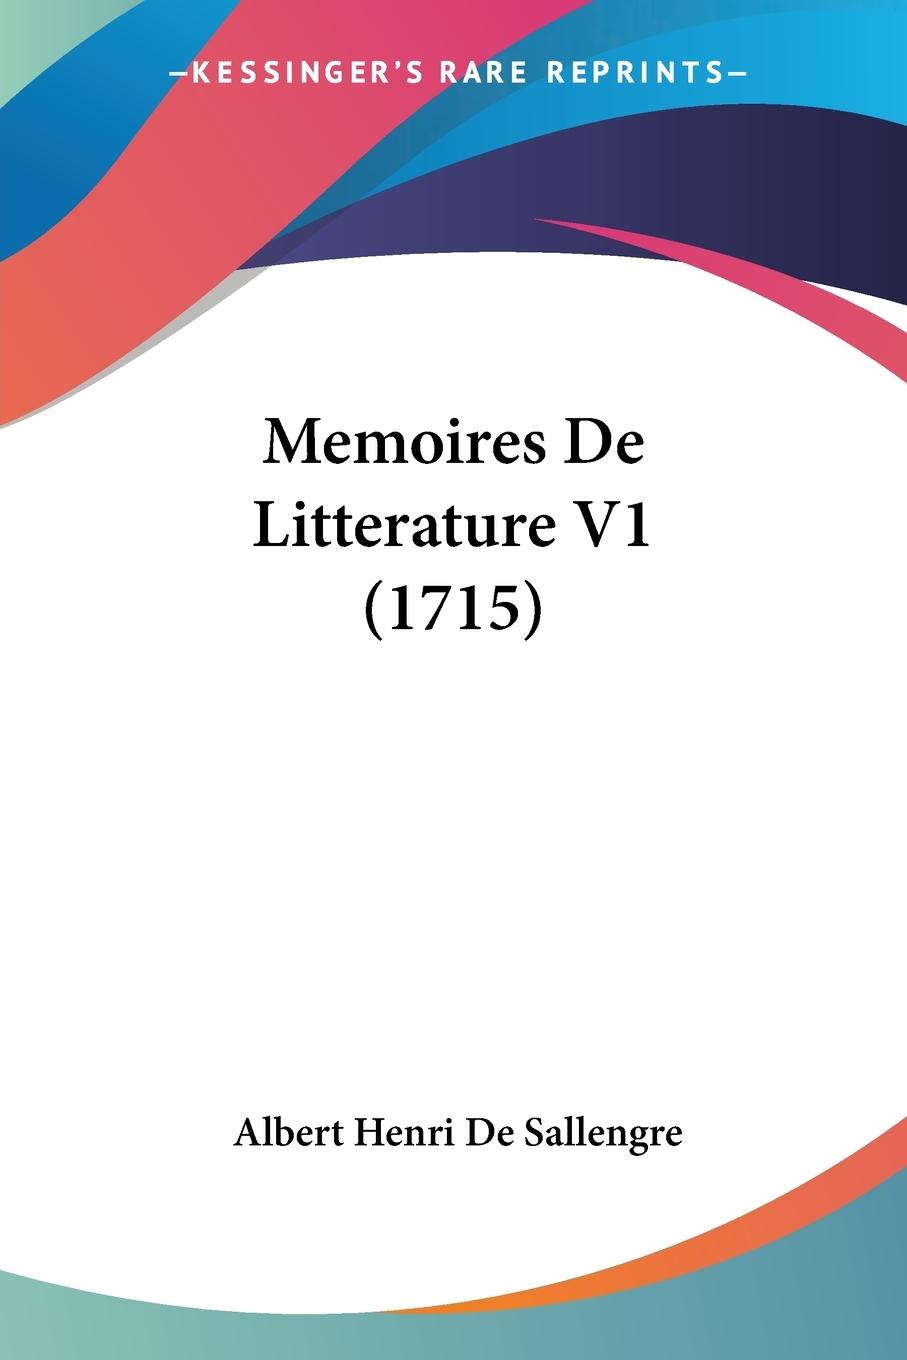 Memoires De Litterature V1 (1715) - Sallengre, Albert Henri De